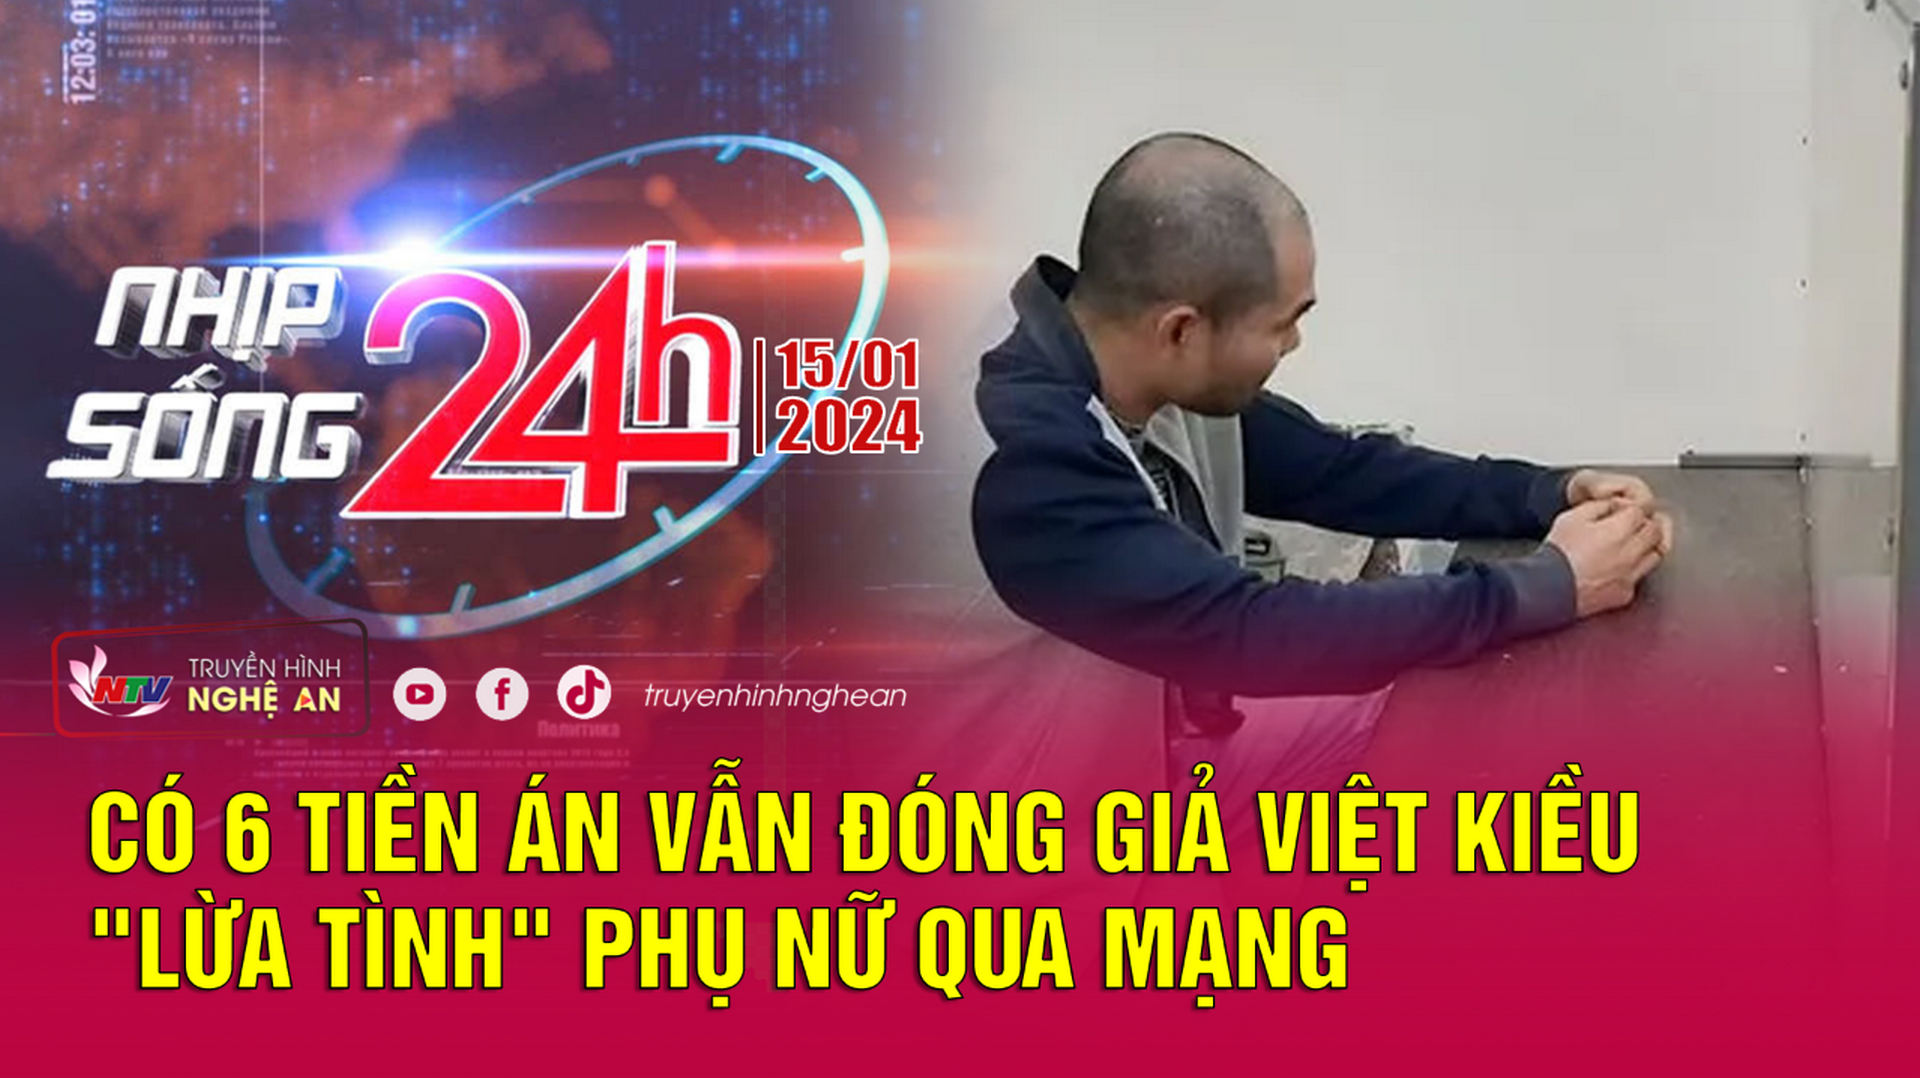 Bản tin Nhịp sống 24h - 15/01/2024: Có 6 tiền án vẫn đóng giả Việt kiều "lừa tình" phụ nữ qua mạng